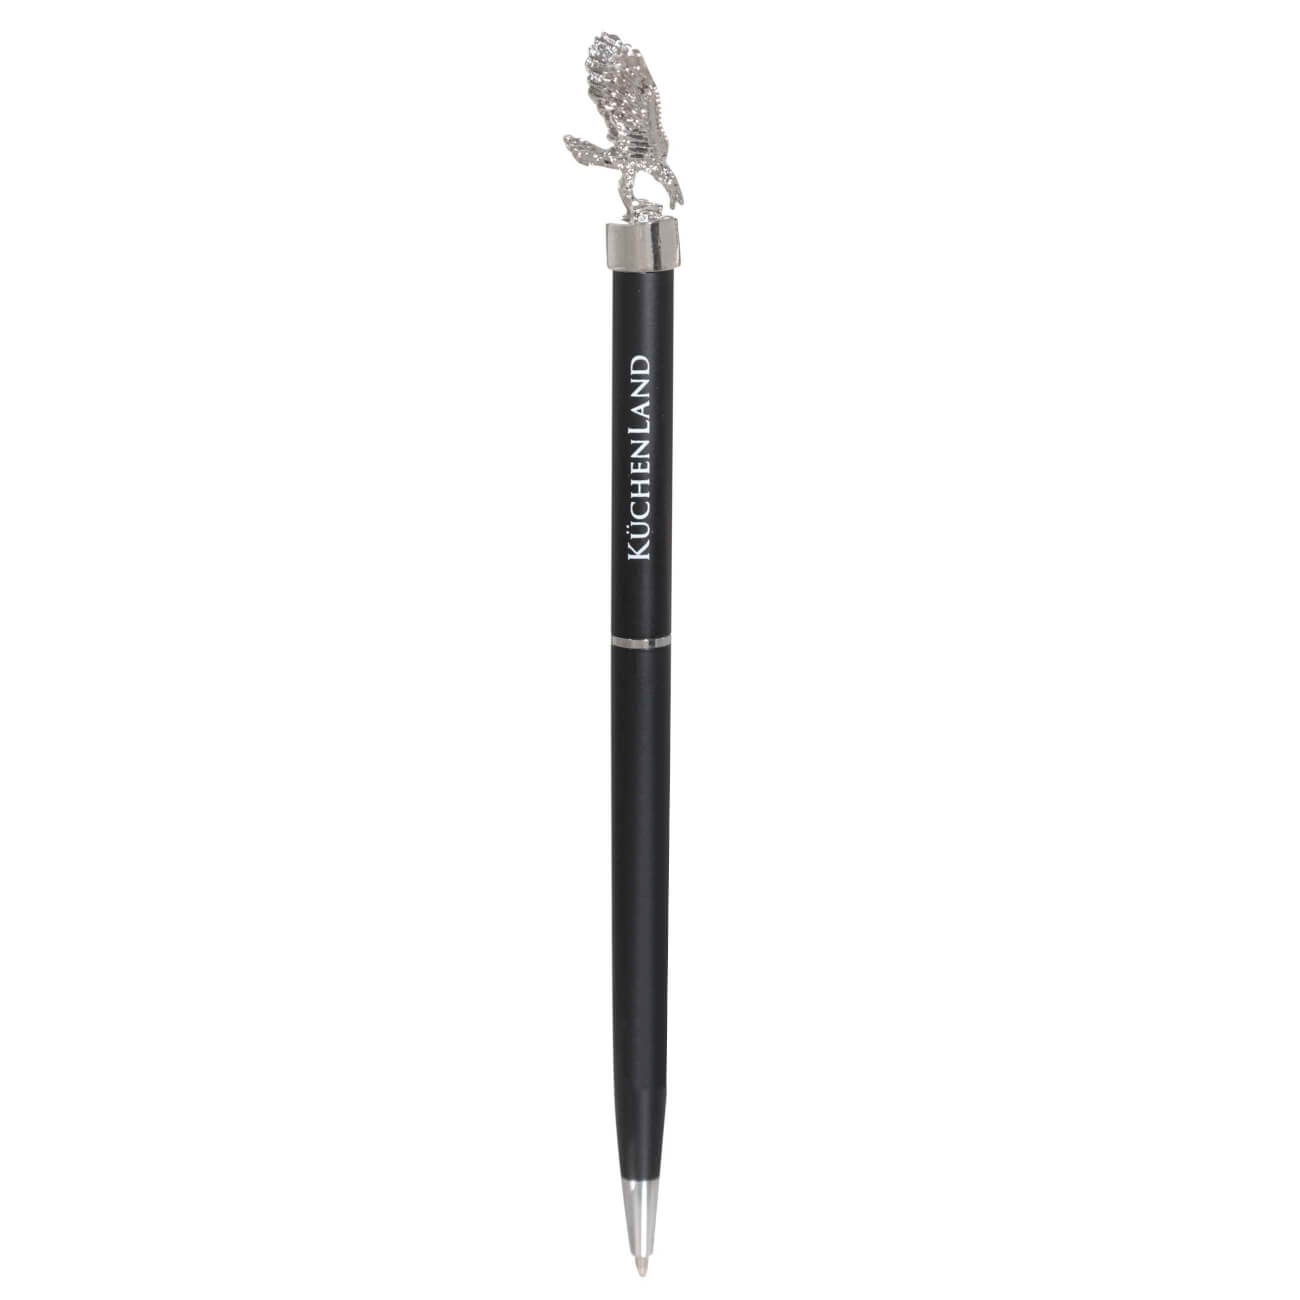 Ручка шариковая, 15 см, с фигуркой, сталь, черная, Орел, Draw figure портрет звери ные орел большой 72 5 х 40 см